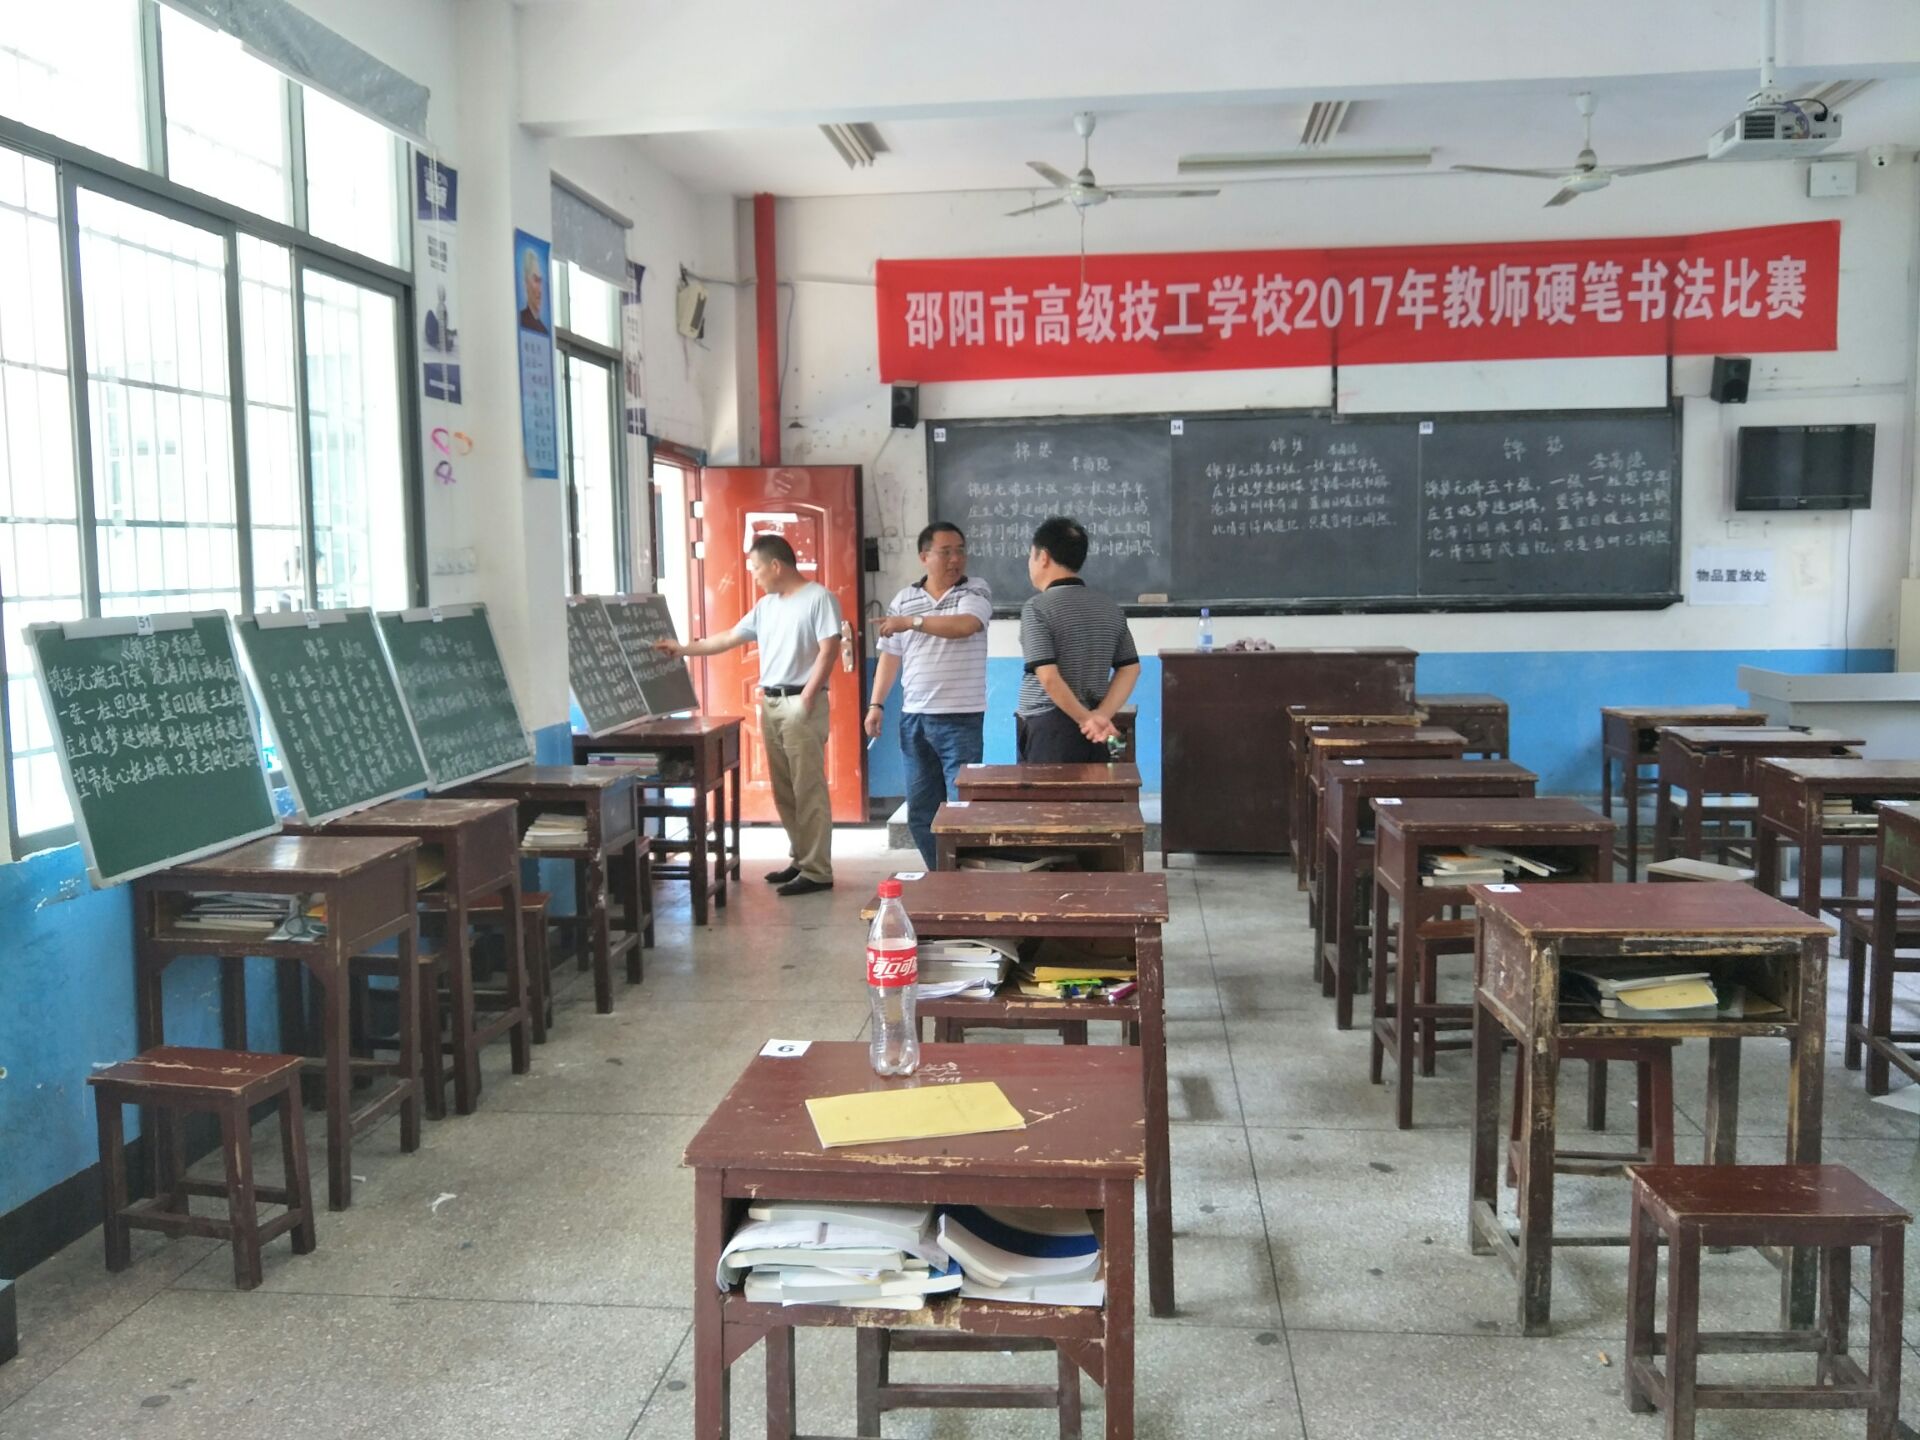 邵阳市高级技工学校2017年教师硬笔书法比赛